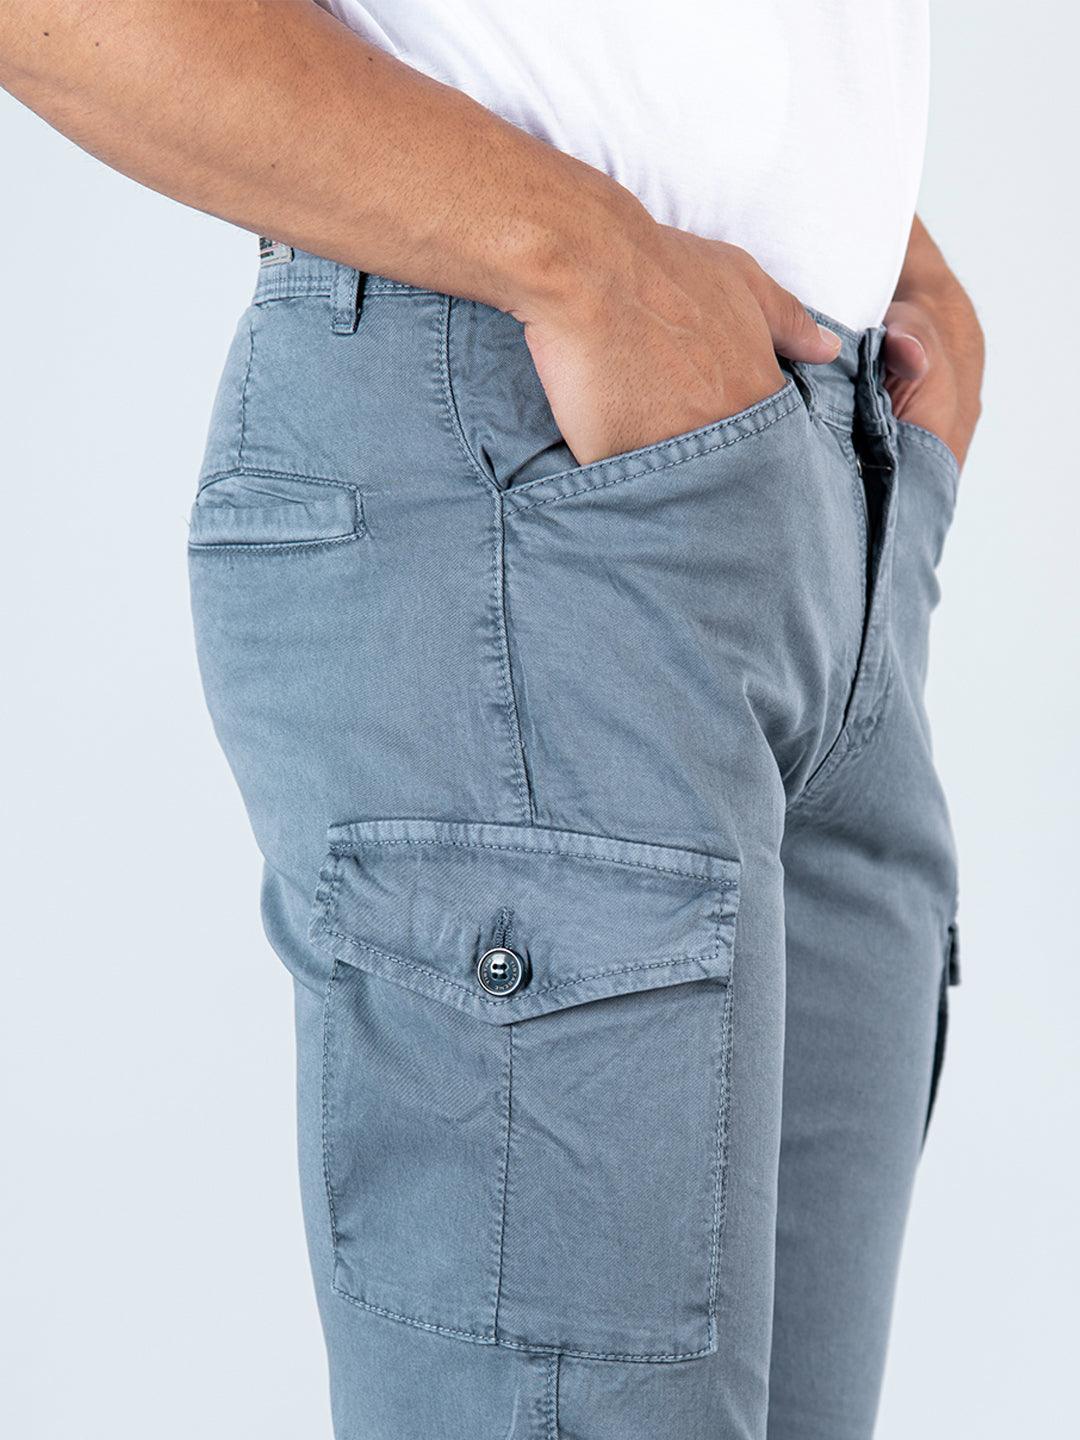 Gap Pants Size 29 W30